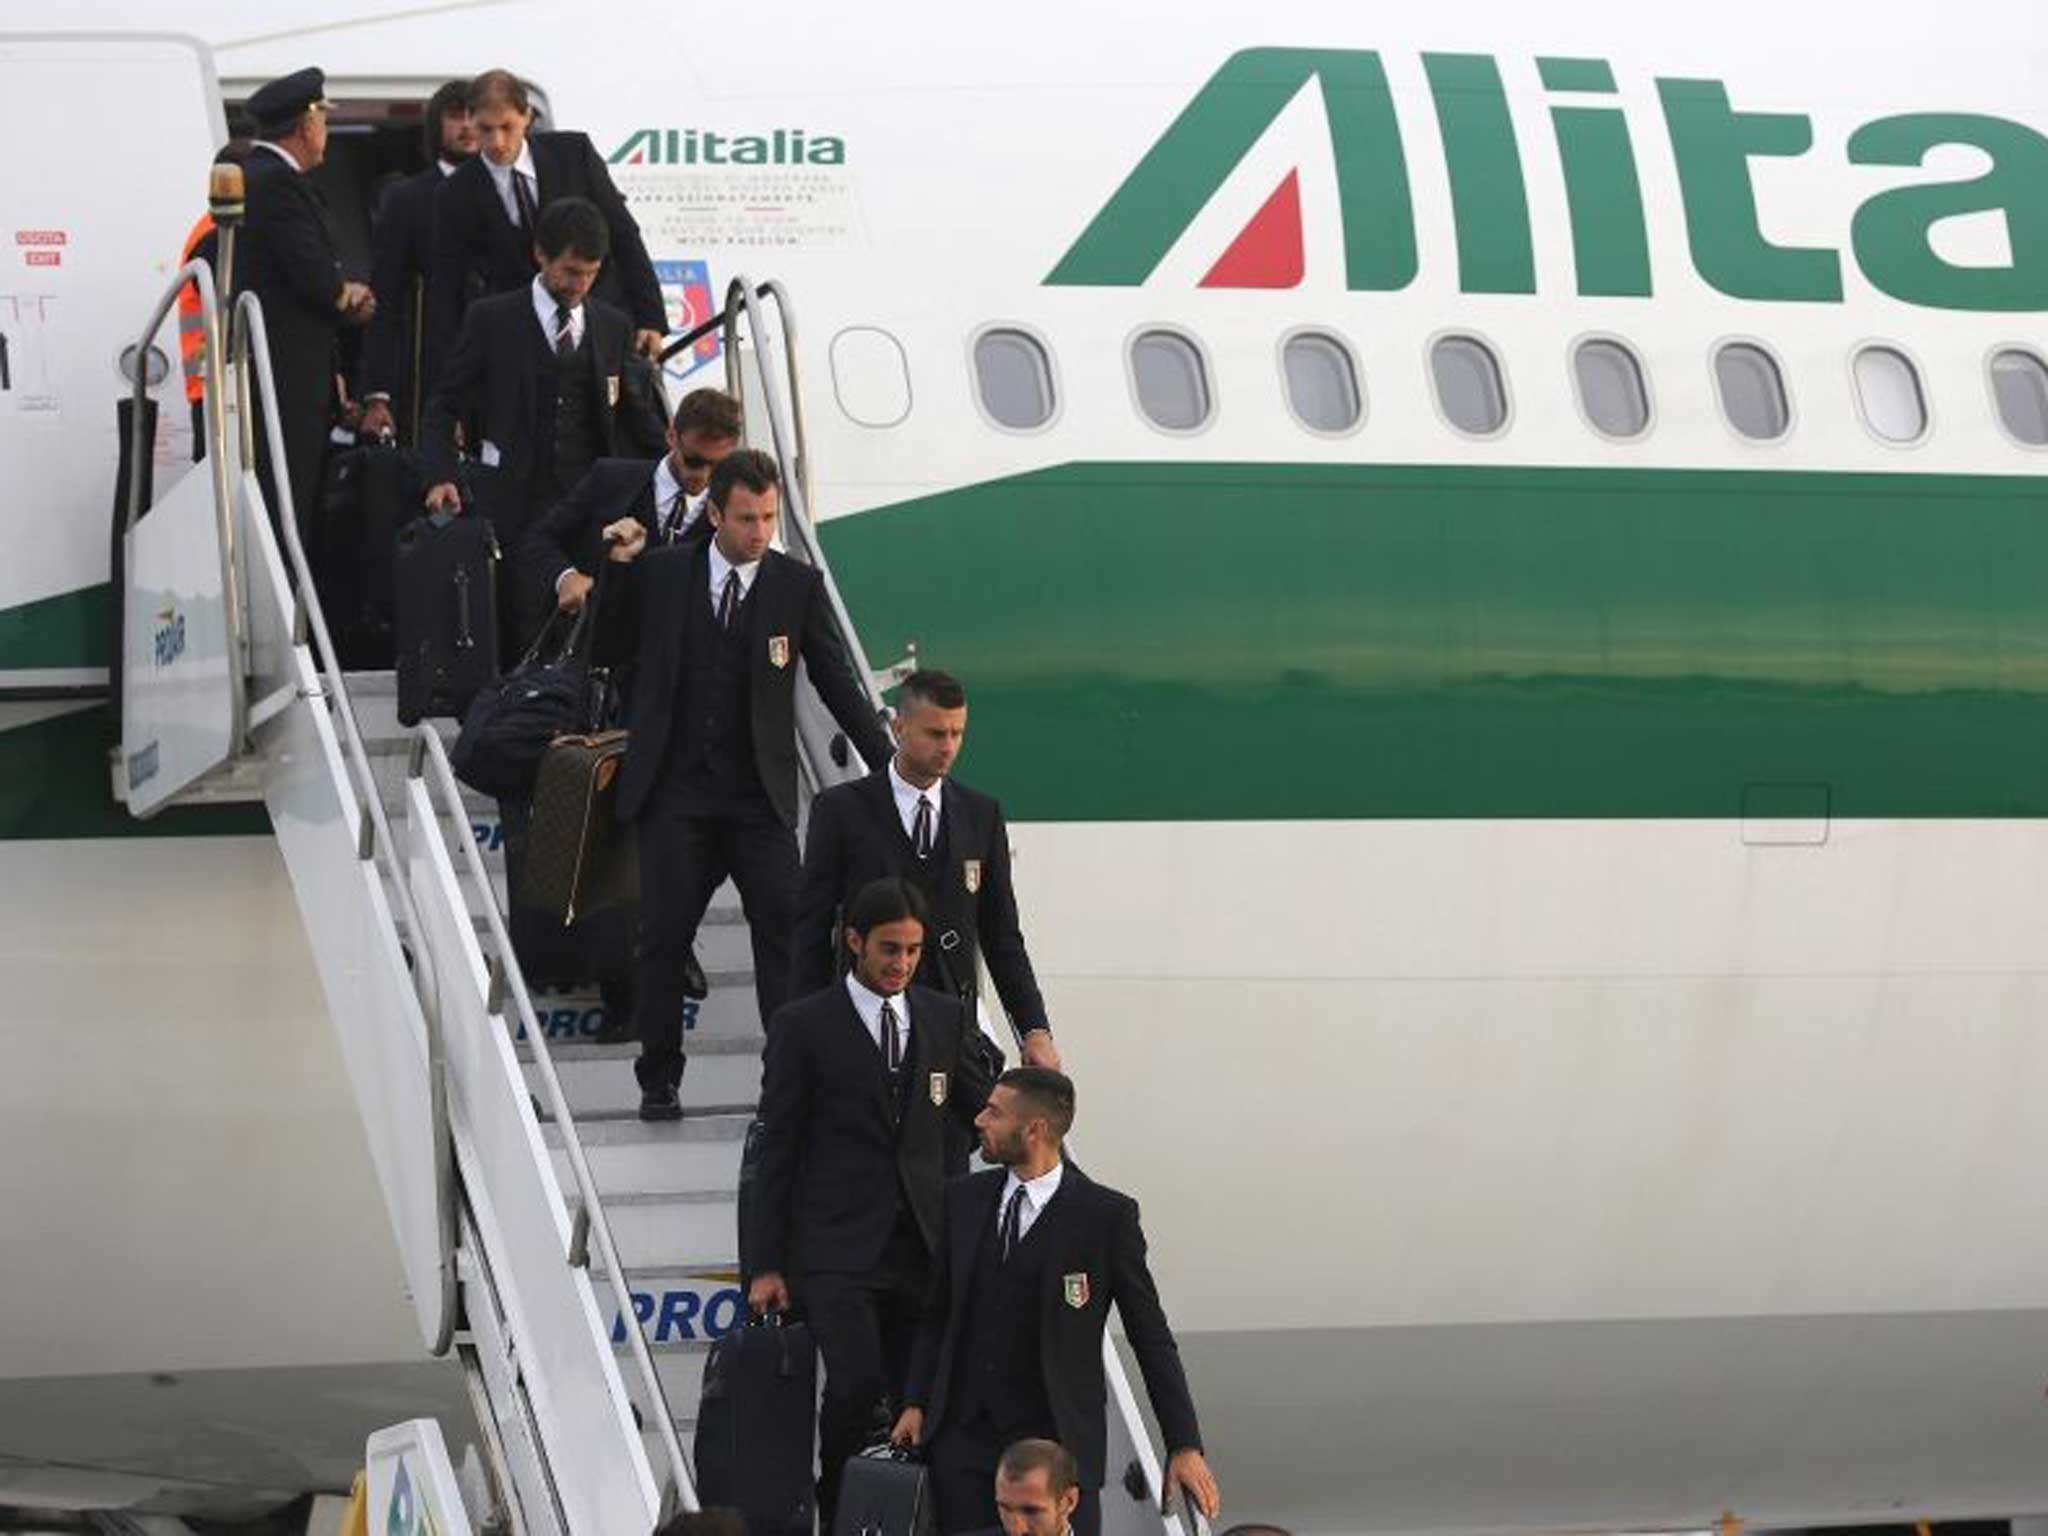 The Italian team arriving in Brazil